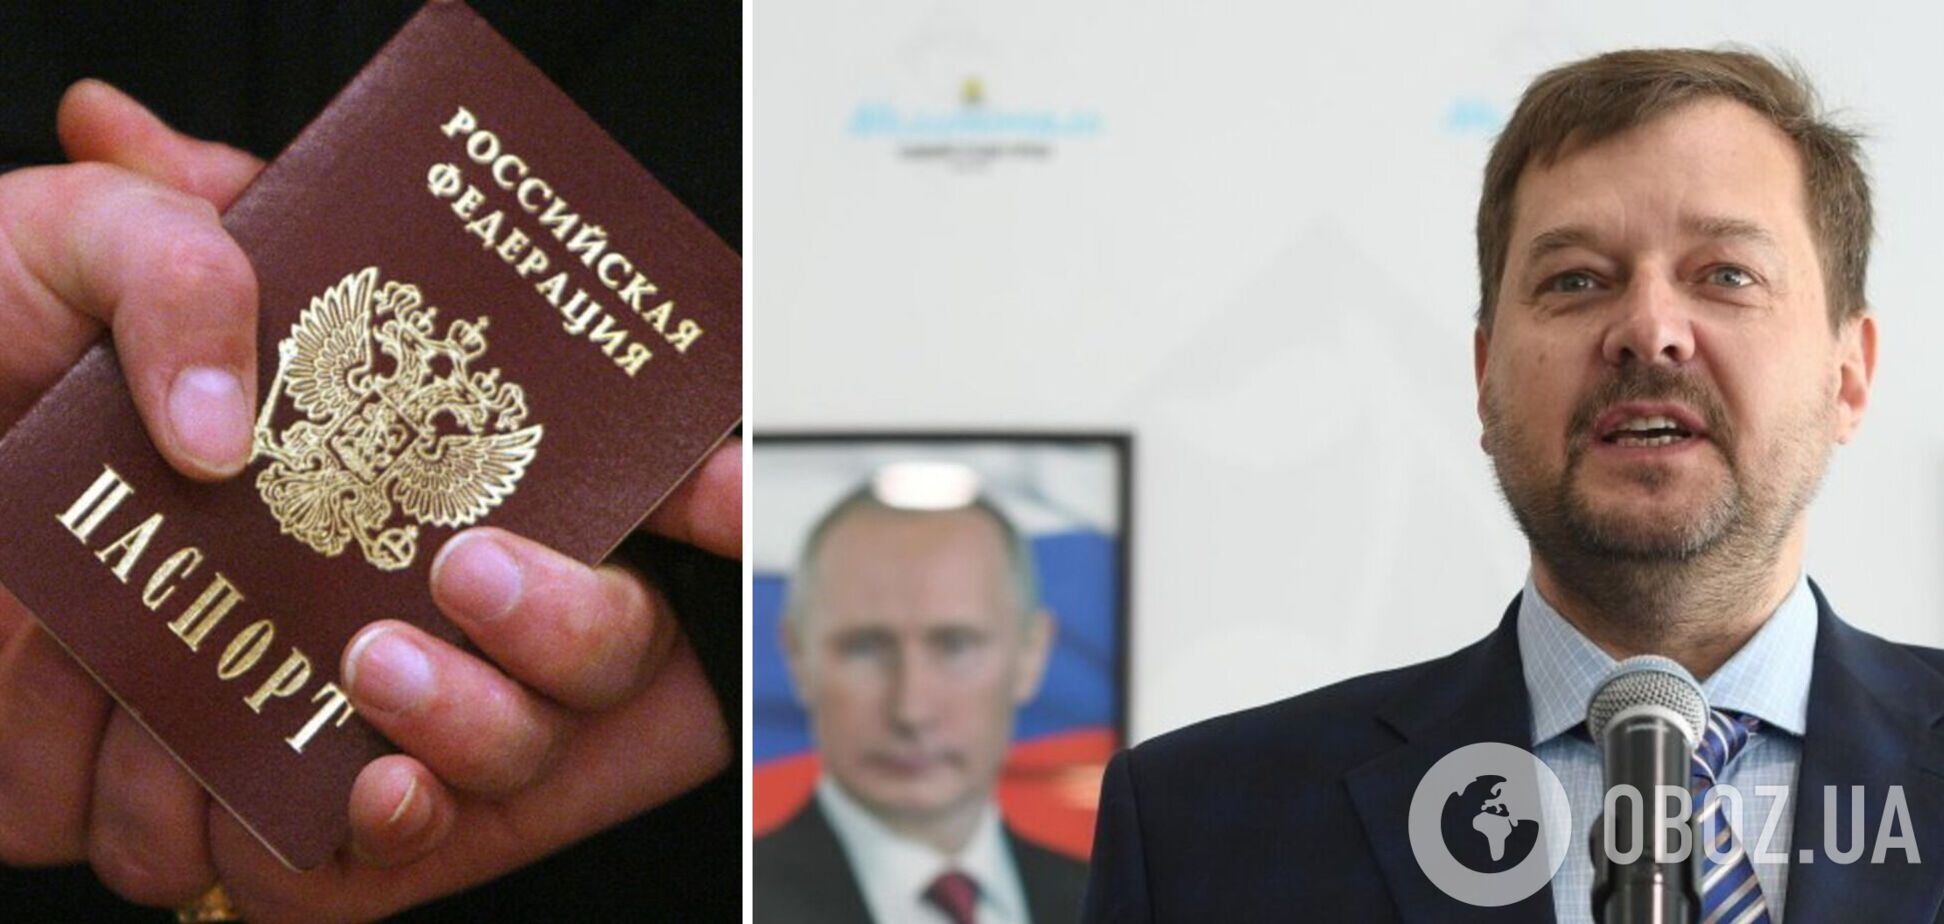 Гауляйтер Балицкий получил российский паспорт еще до полномасштабной войны: СМИ раскрыли детали